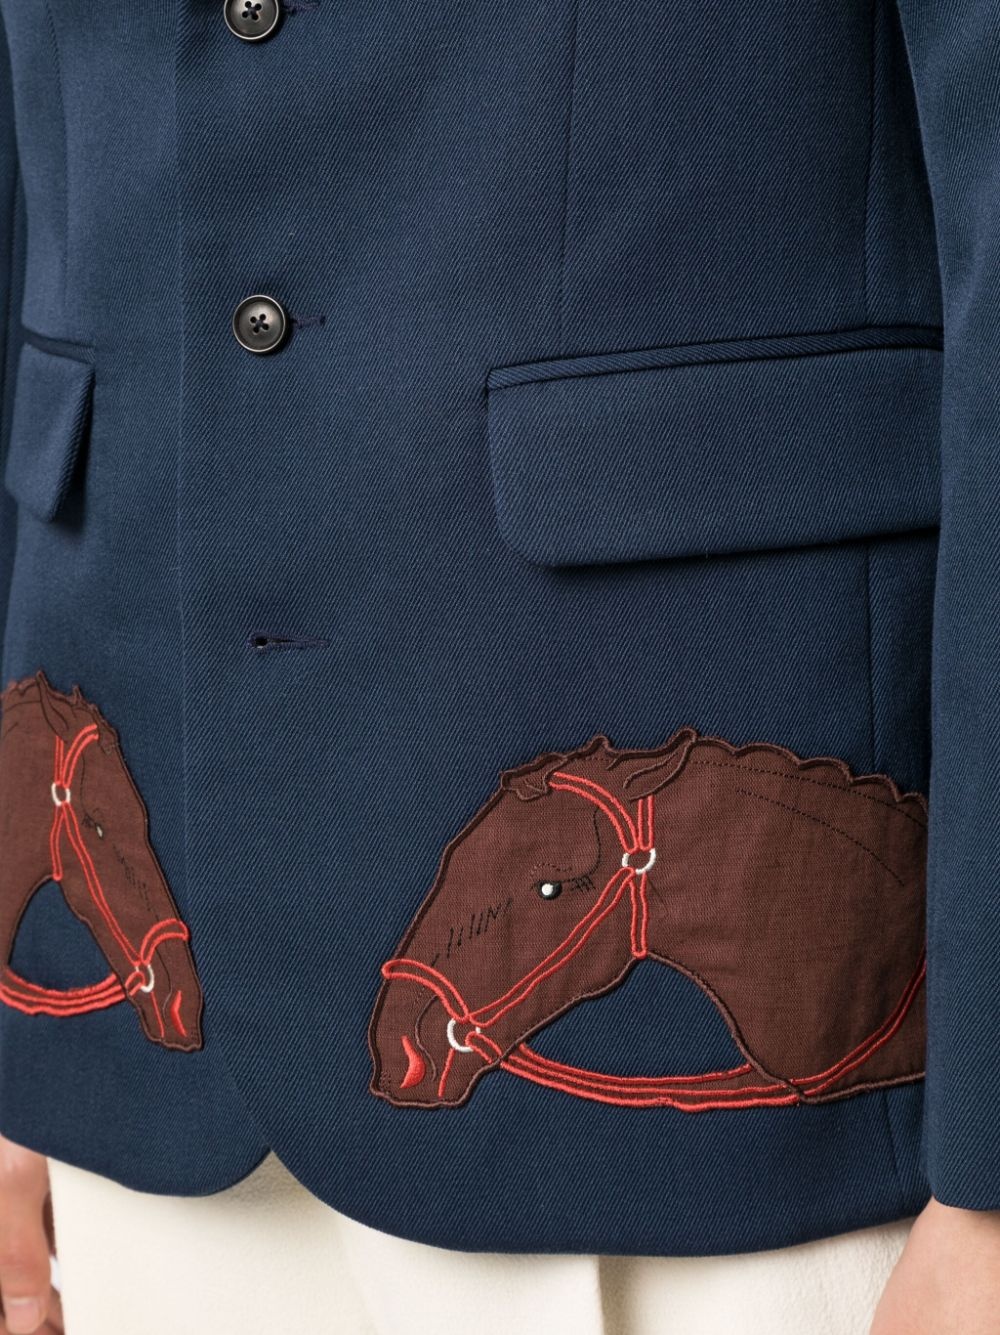 Pony AppliquÃ© suit jacket - 5